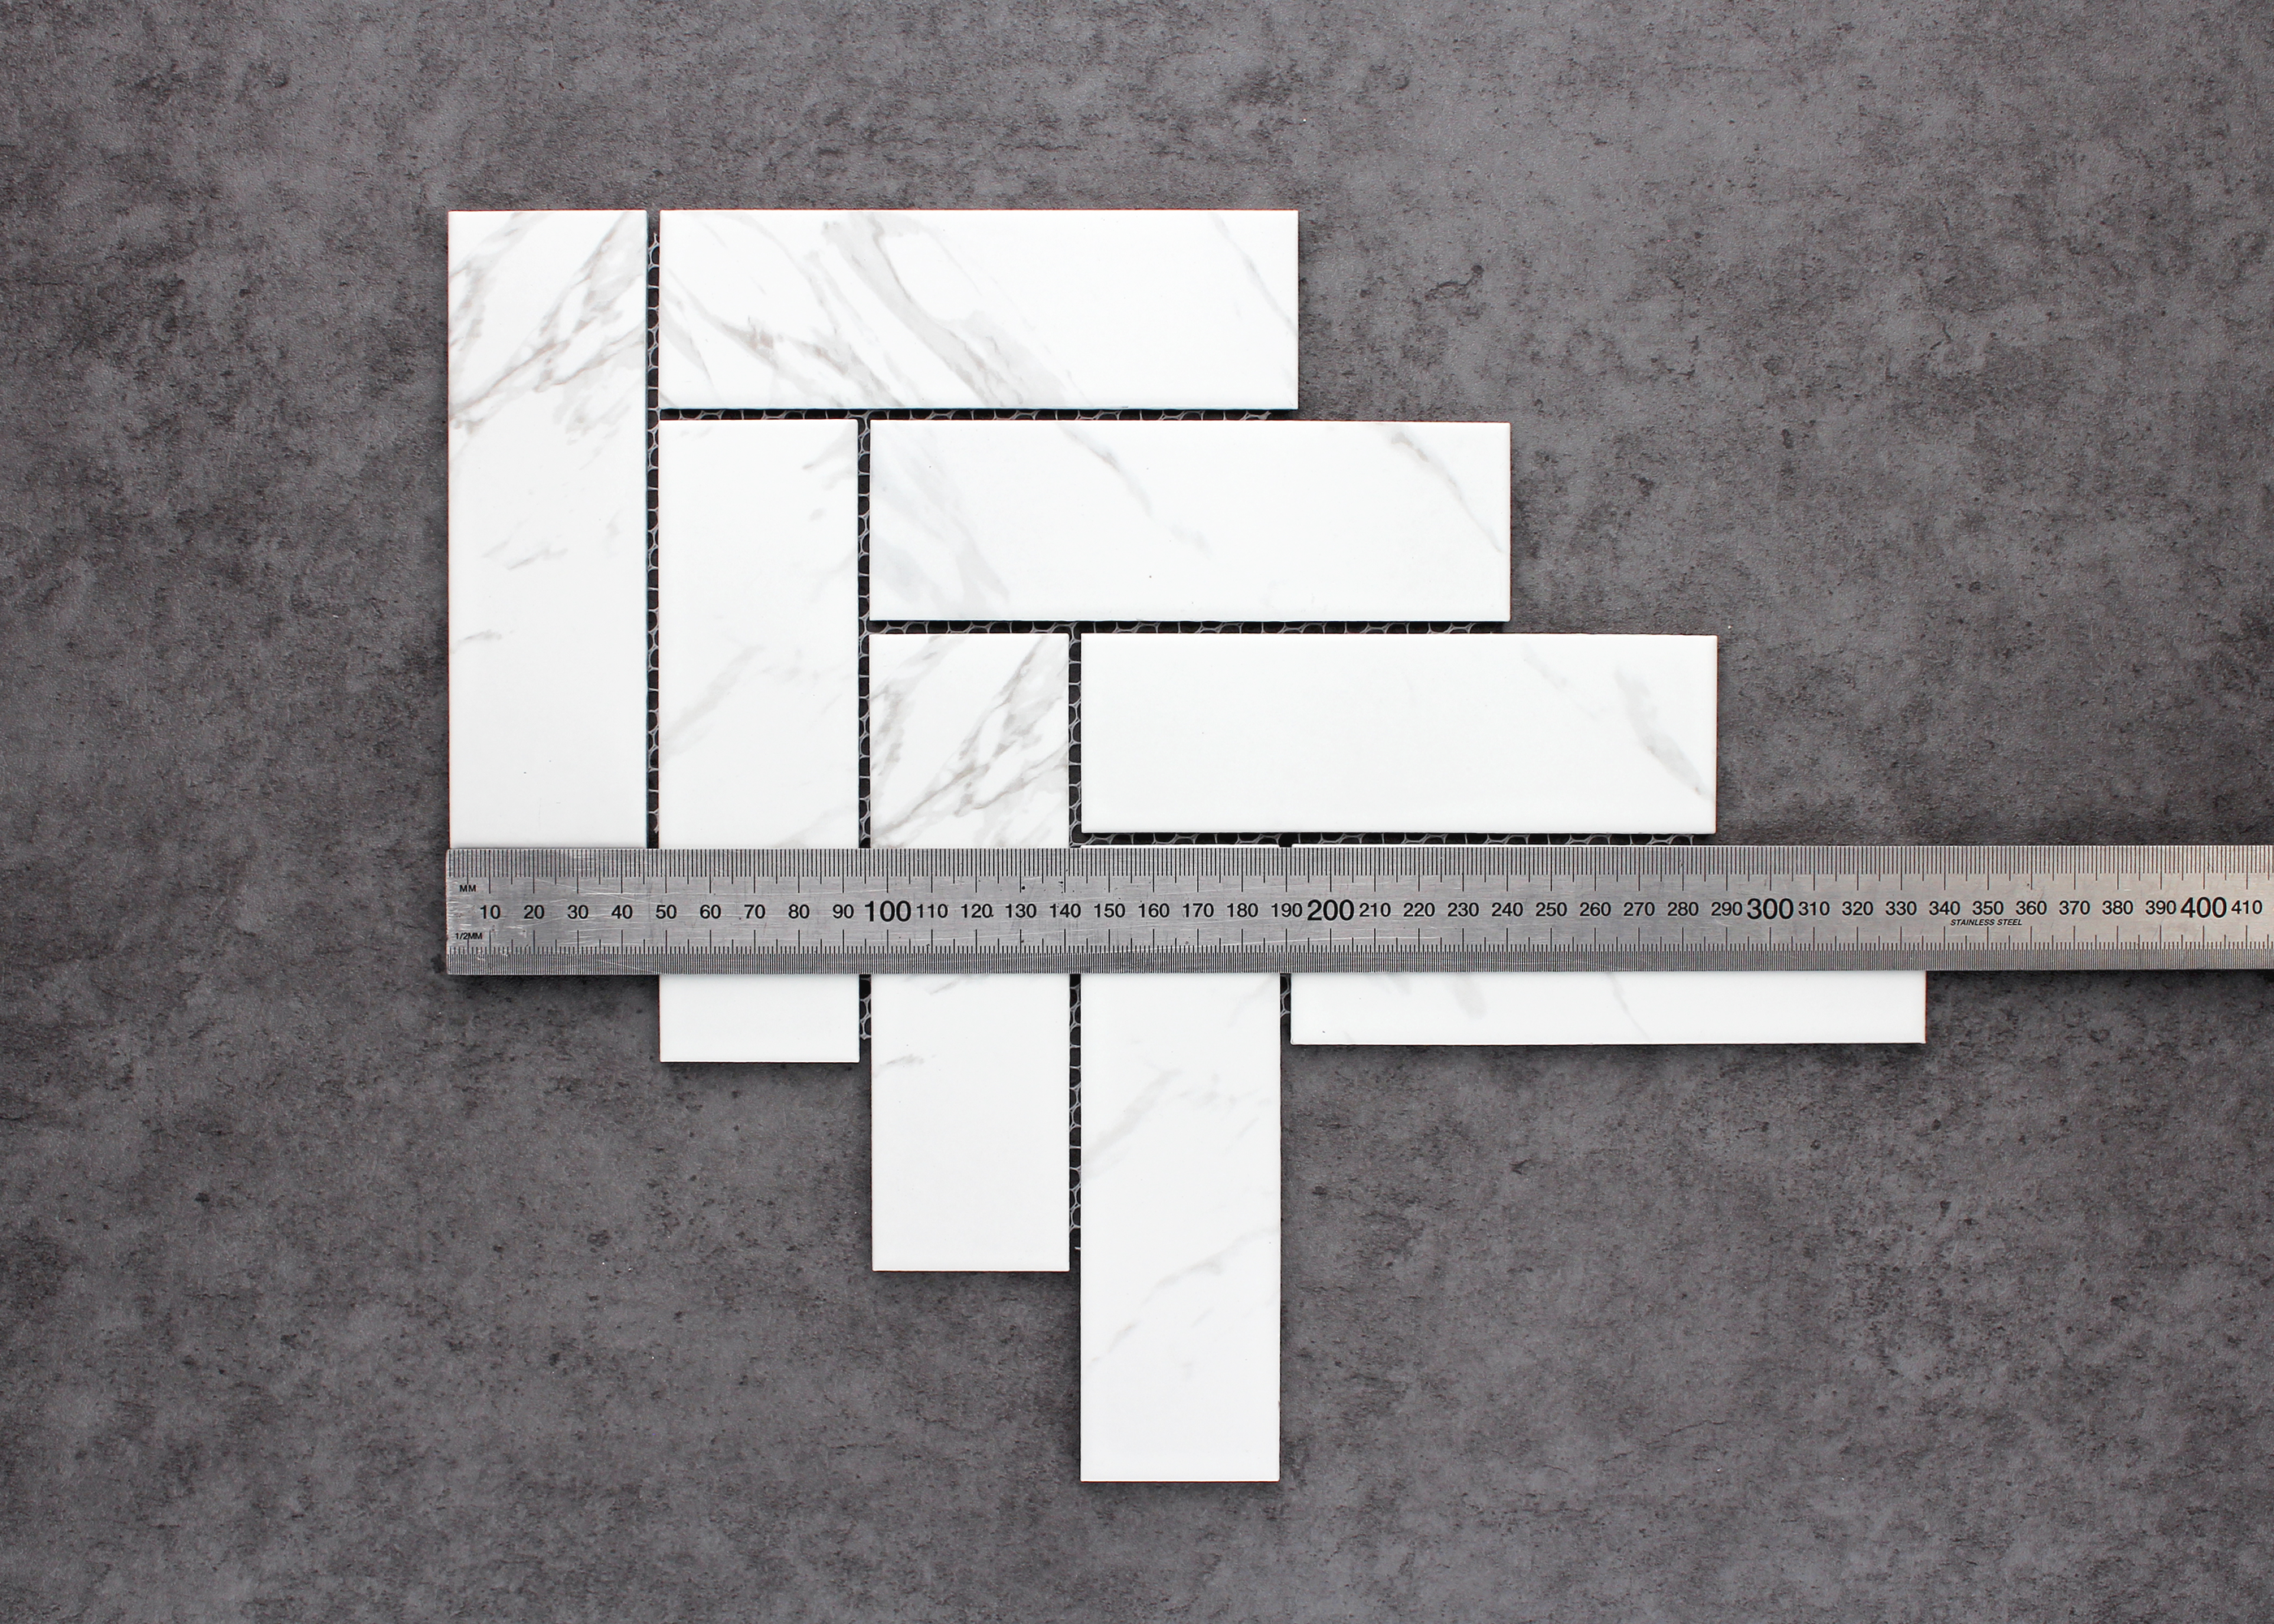 Carrara Matt Large Herringbone-CARRARA-Mosaic Mode